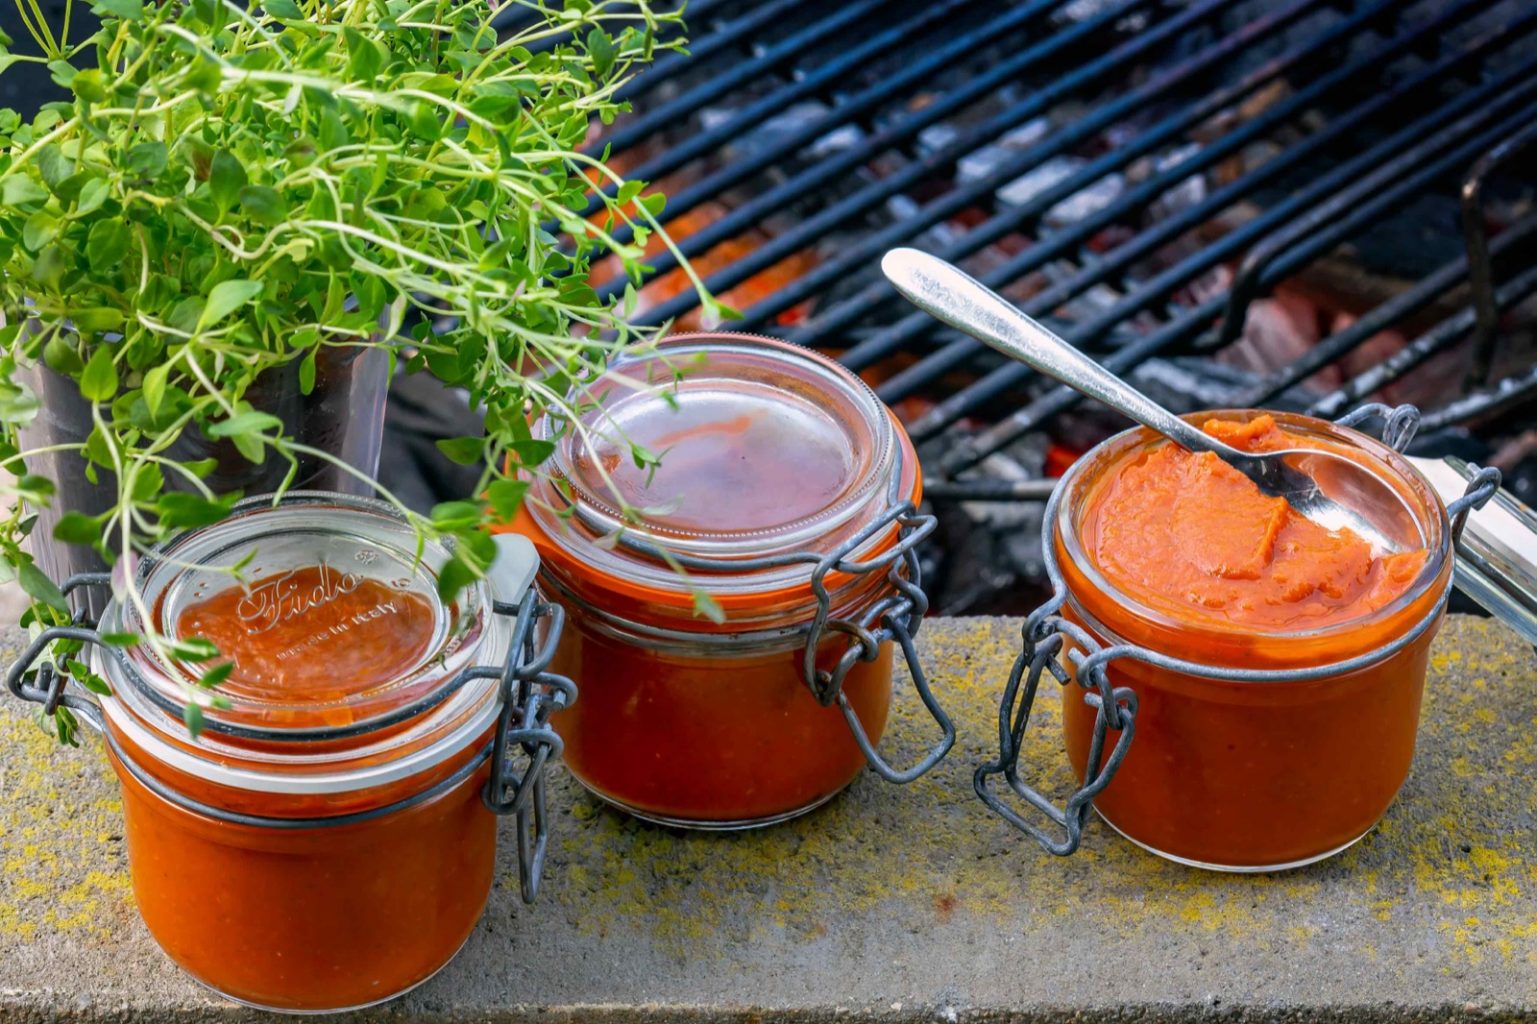 Kerran kesässä on valmistatteva itse tomaattiketsuppia! Tällä ohjeella valmistuu noin 5 dl mahtavaa ketsuppia kotimaisista tomaateista.